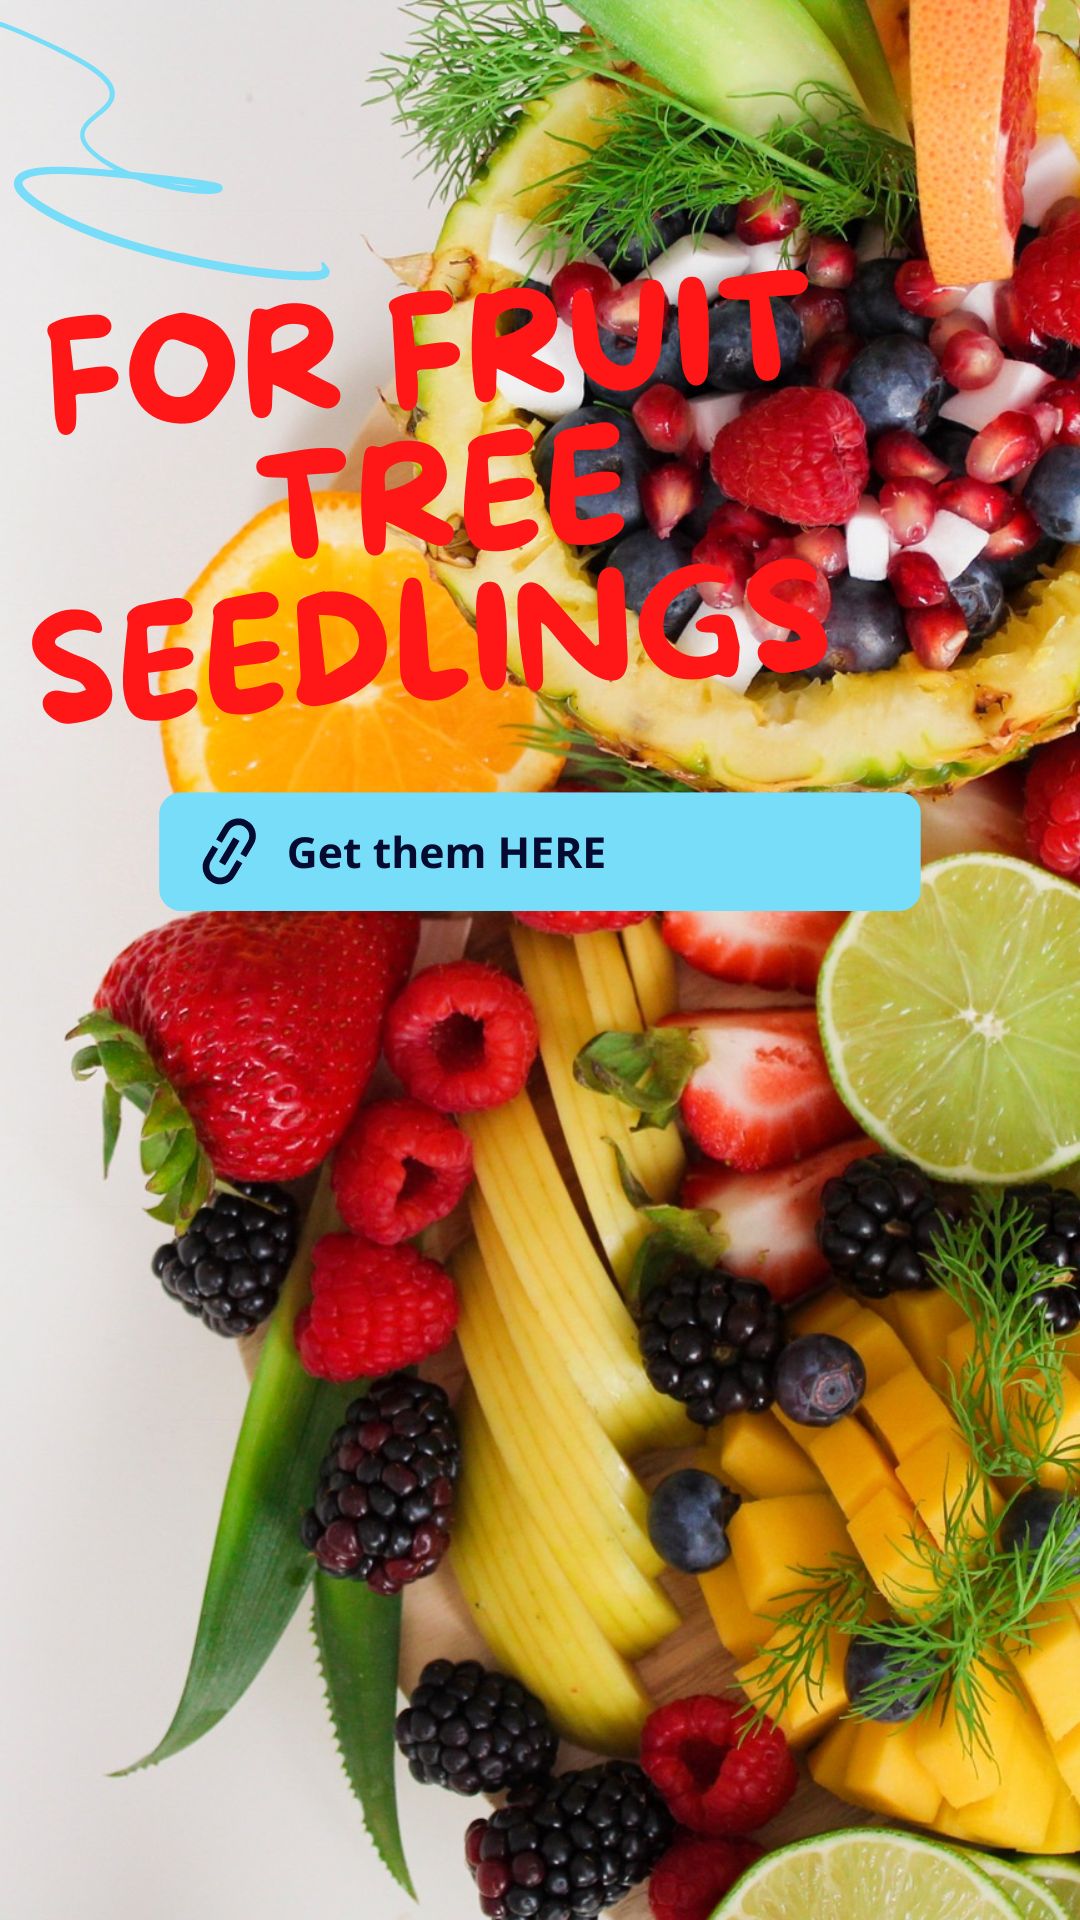 FOR fruit seedlings